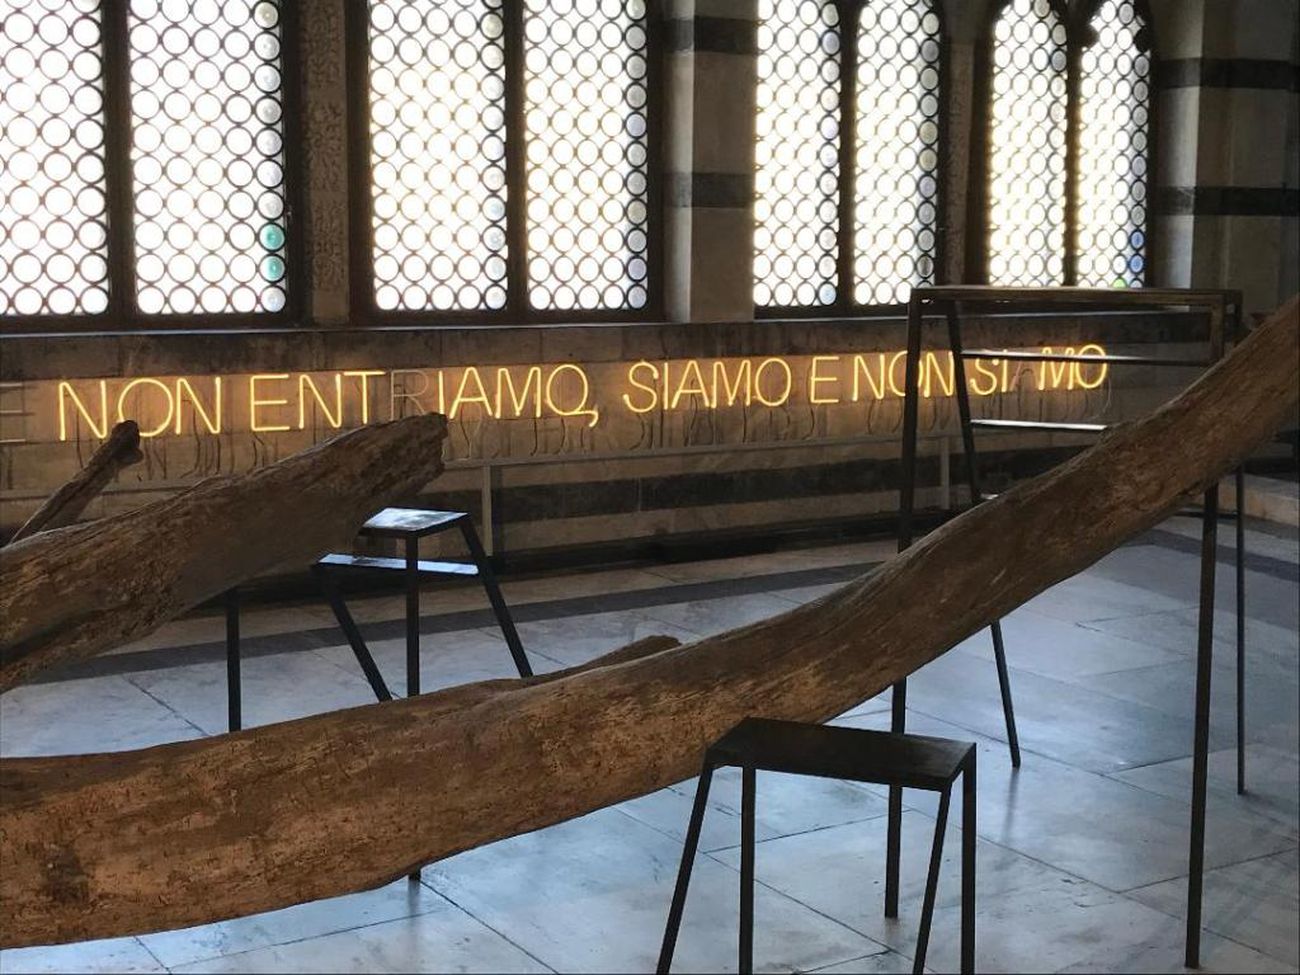 Andrea Santarlasci. Confluenze. Installation view at Santa Maria della Spina, Pisa 2018. Photo Nicola Gronchi